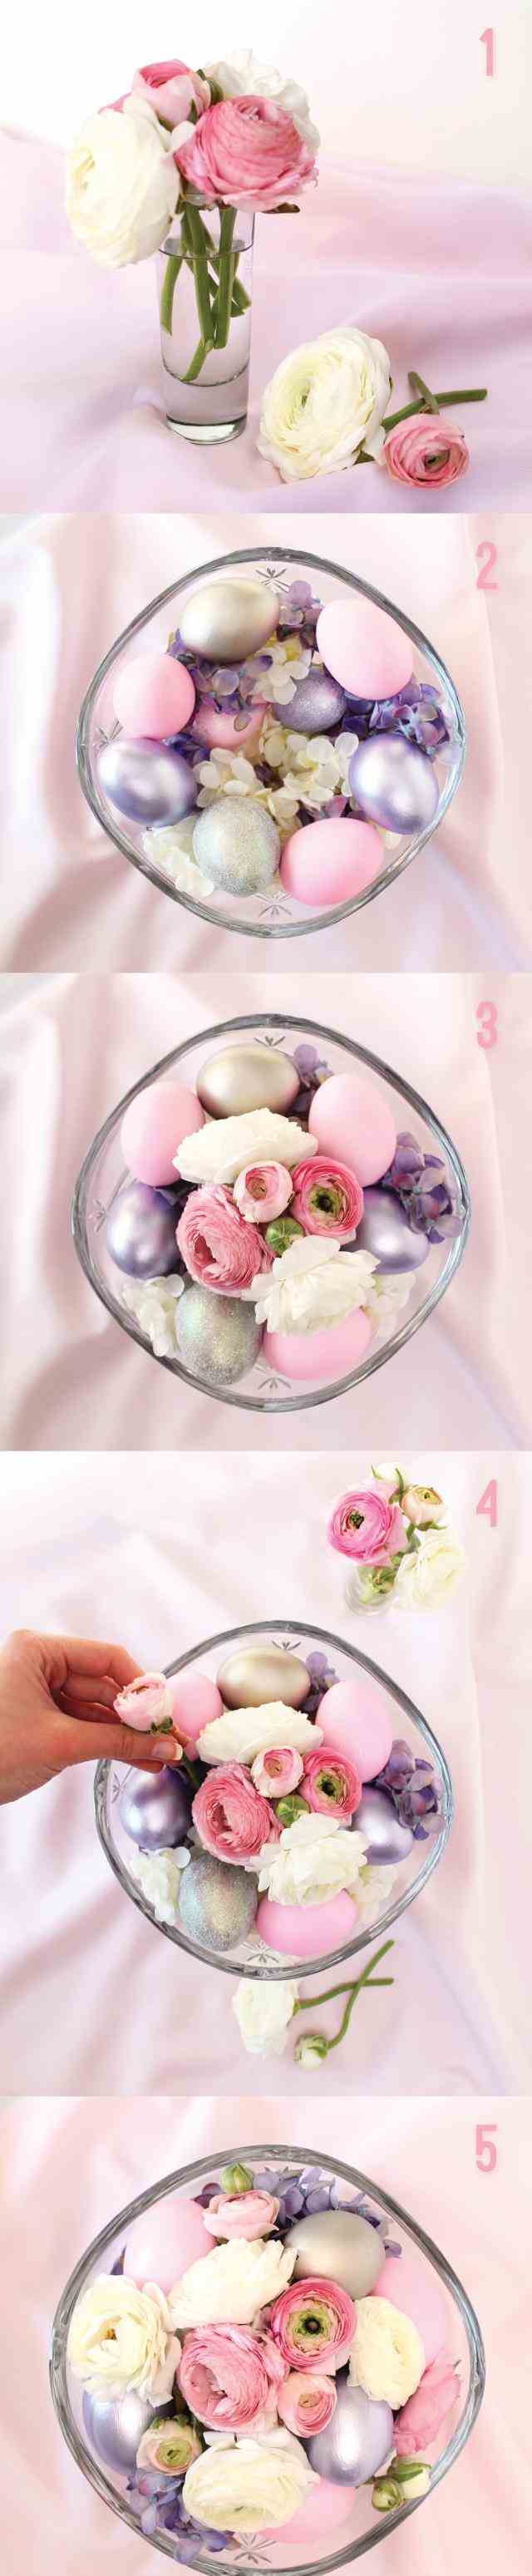 Idéias de decoração para a mesa de Páscoa faça você mesmo flores, ovos, taças de vidro